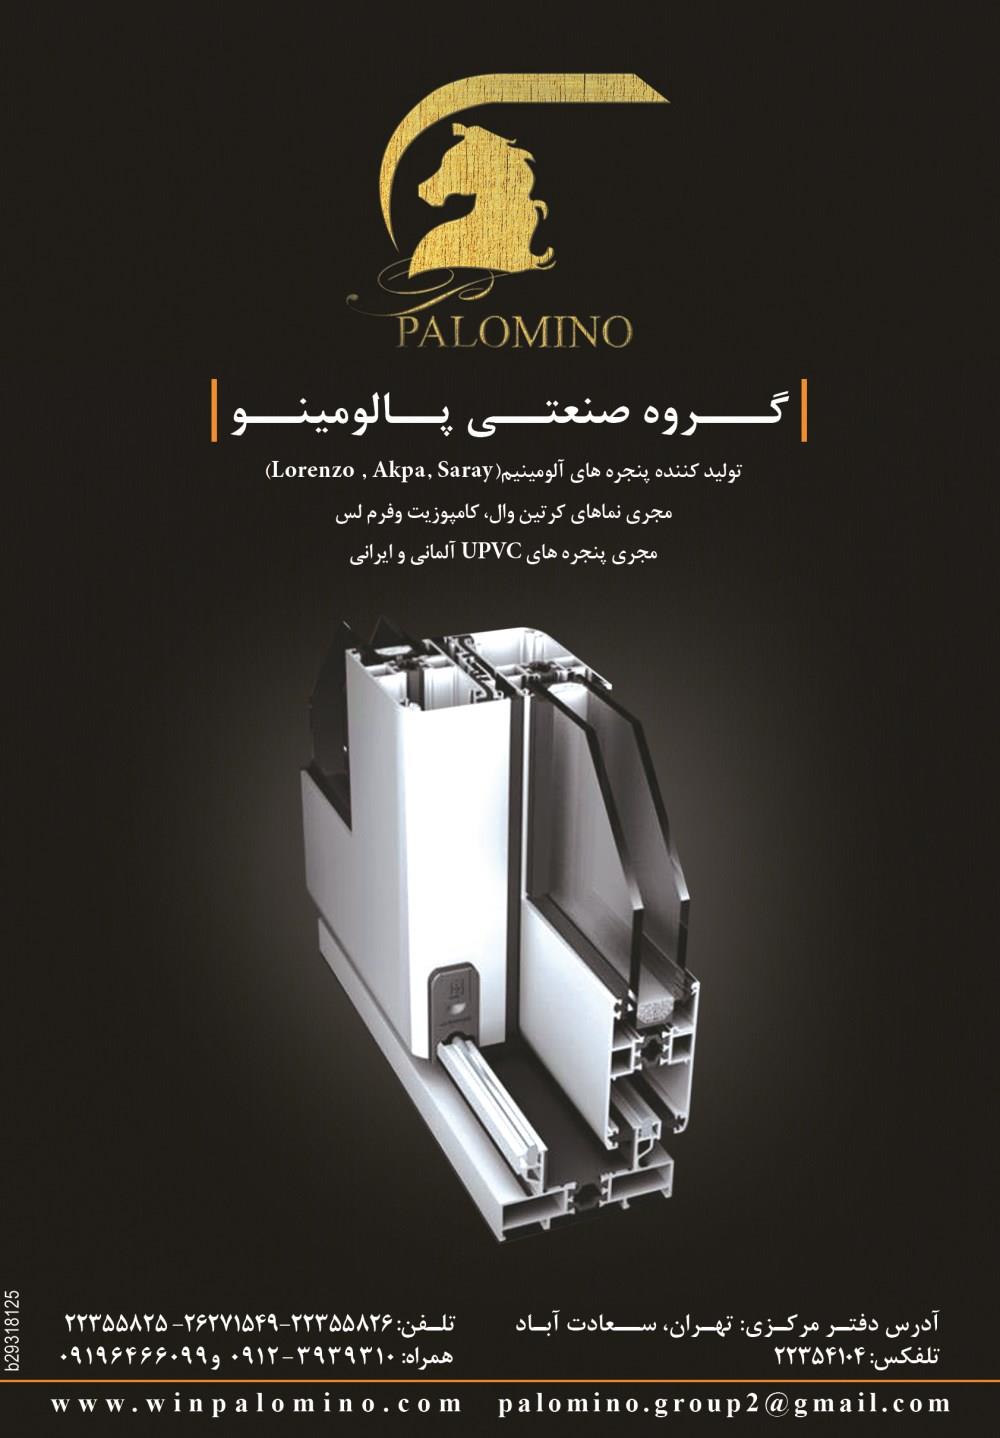 تولیدکننده-پنجره-های-آلومینیوم-Saray-Akpa-Lorenzo-آگهی-در-شماره-289